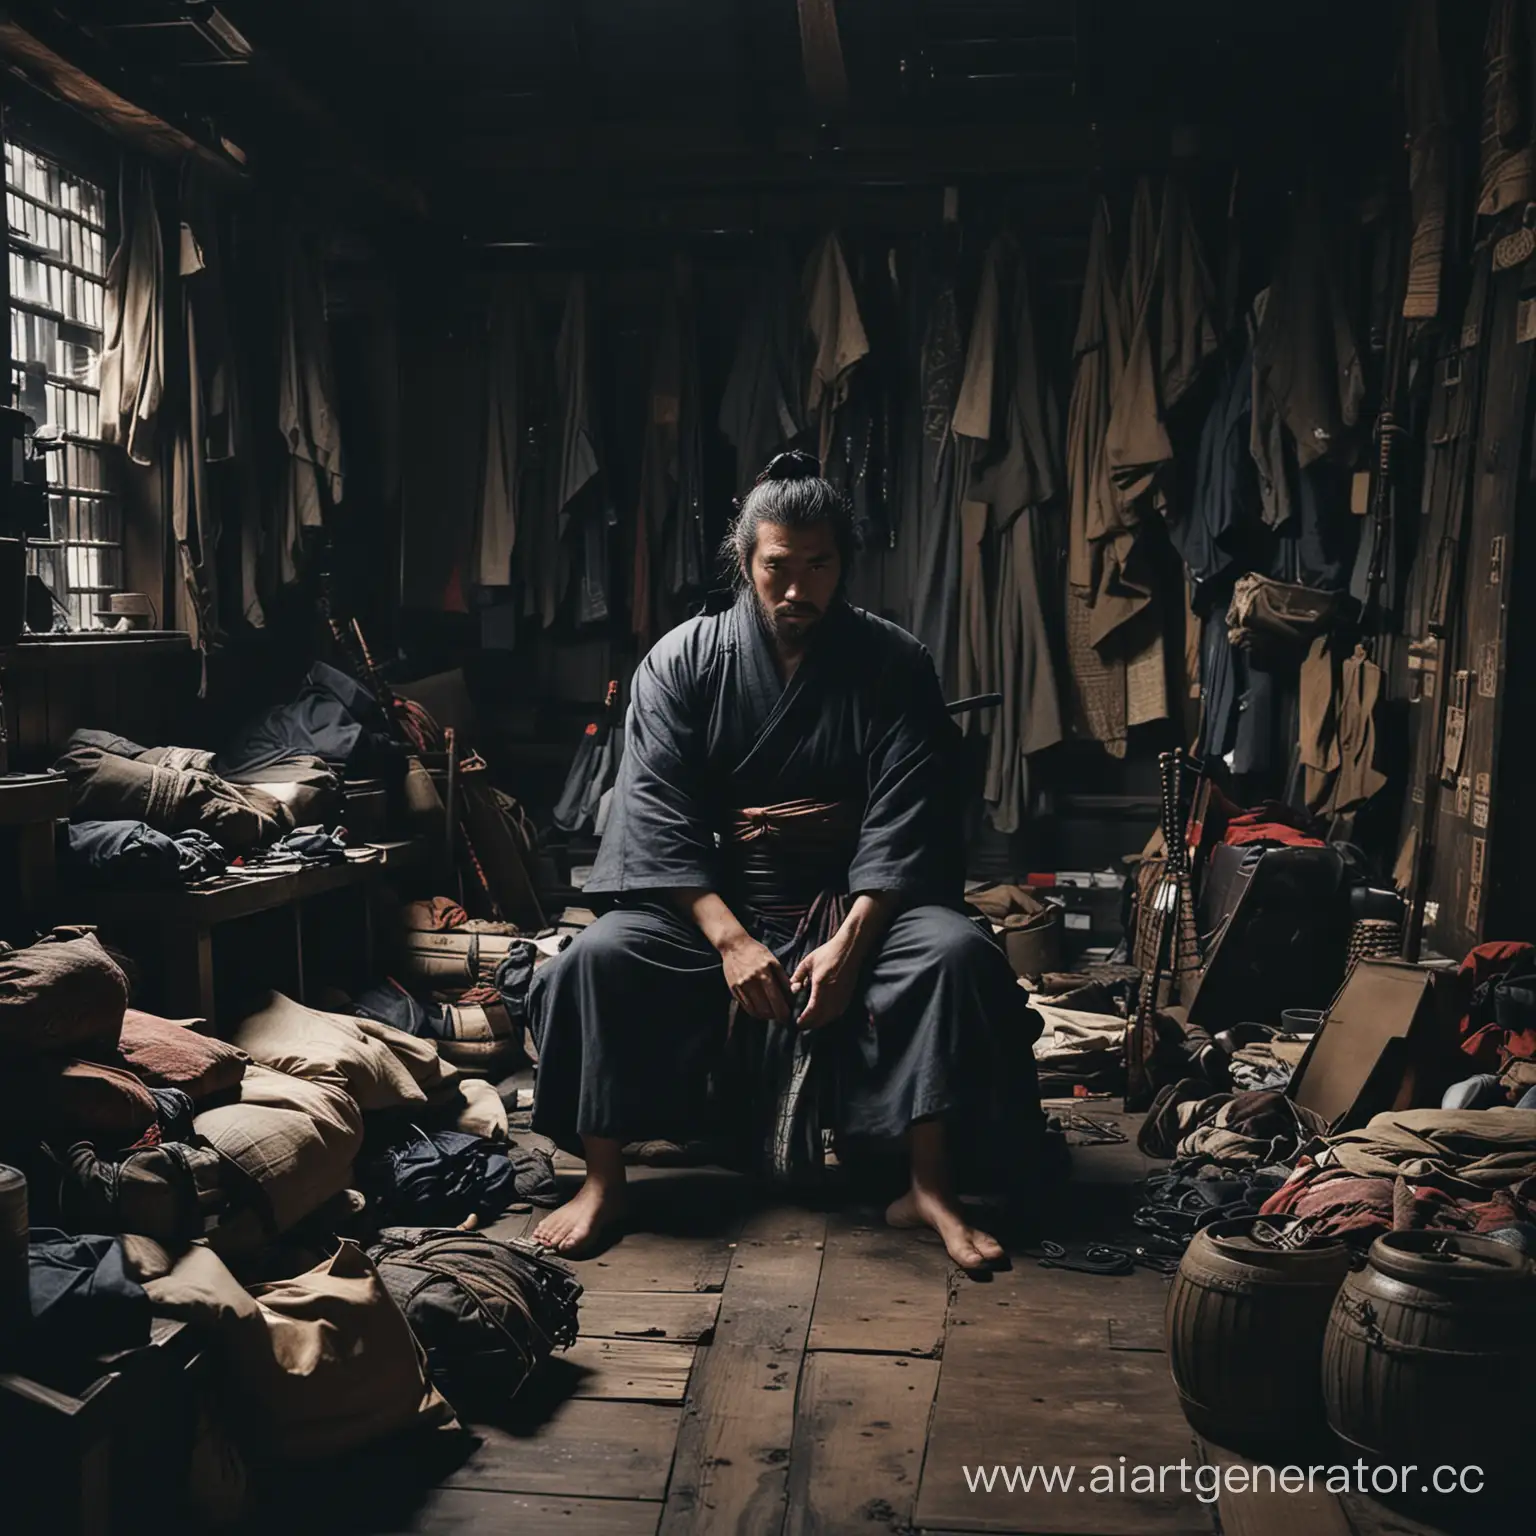 Изможденный самурай сидит  в темной захламленной комнате